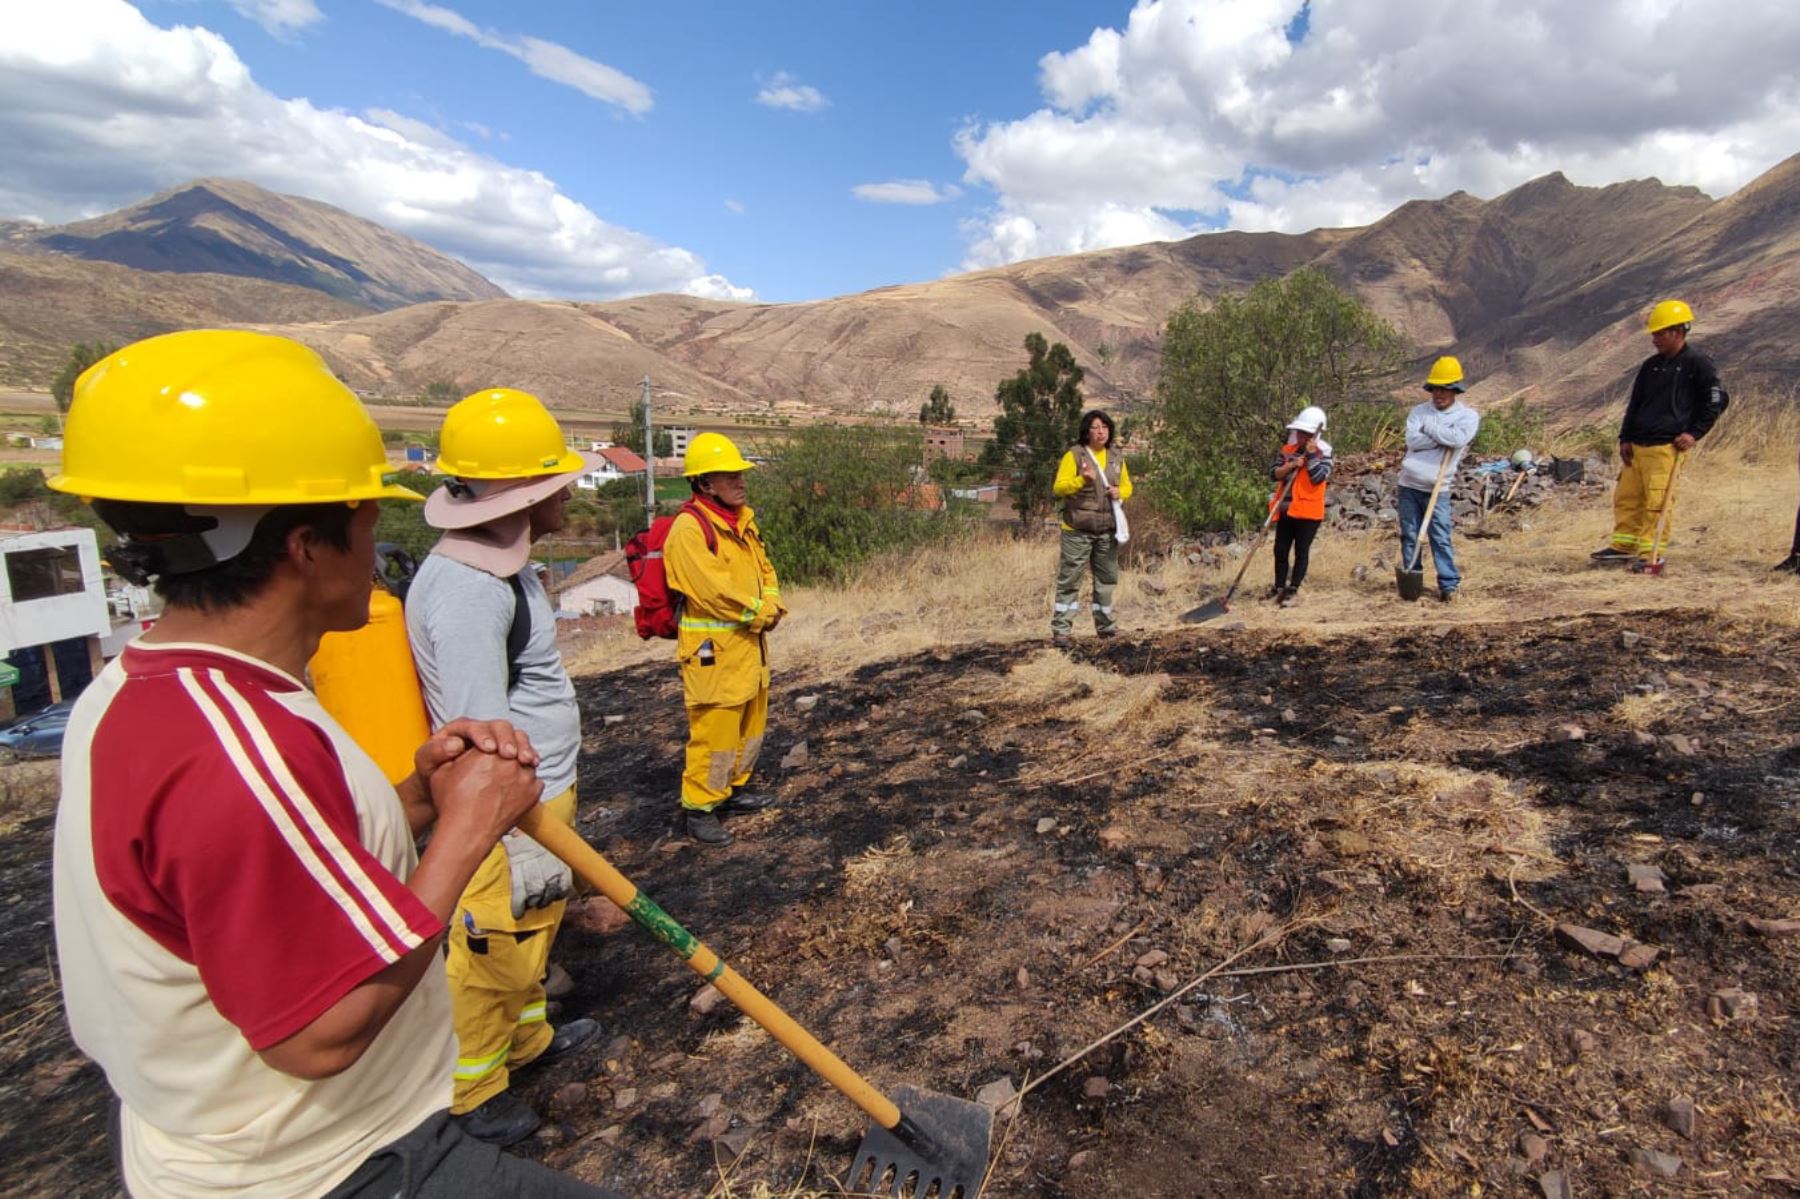 Guardaparques del santuario histórico de Machu Picchu capacitaron a pobladores del distrito de Lucre, región Cusco, en prevención de incendios forestales. Foto: Sernanp